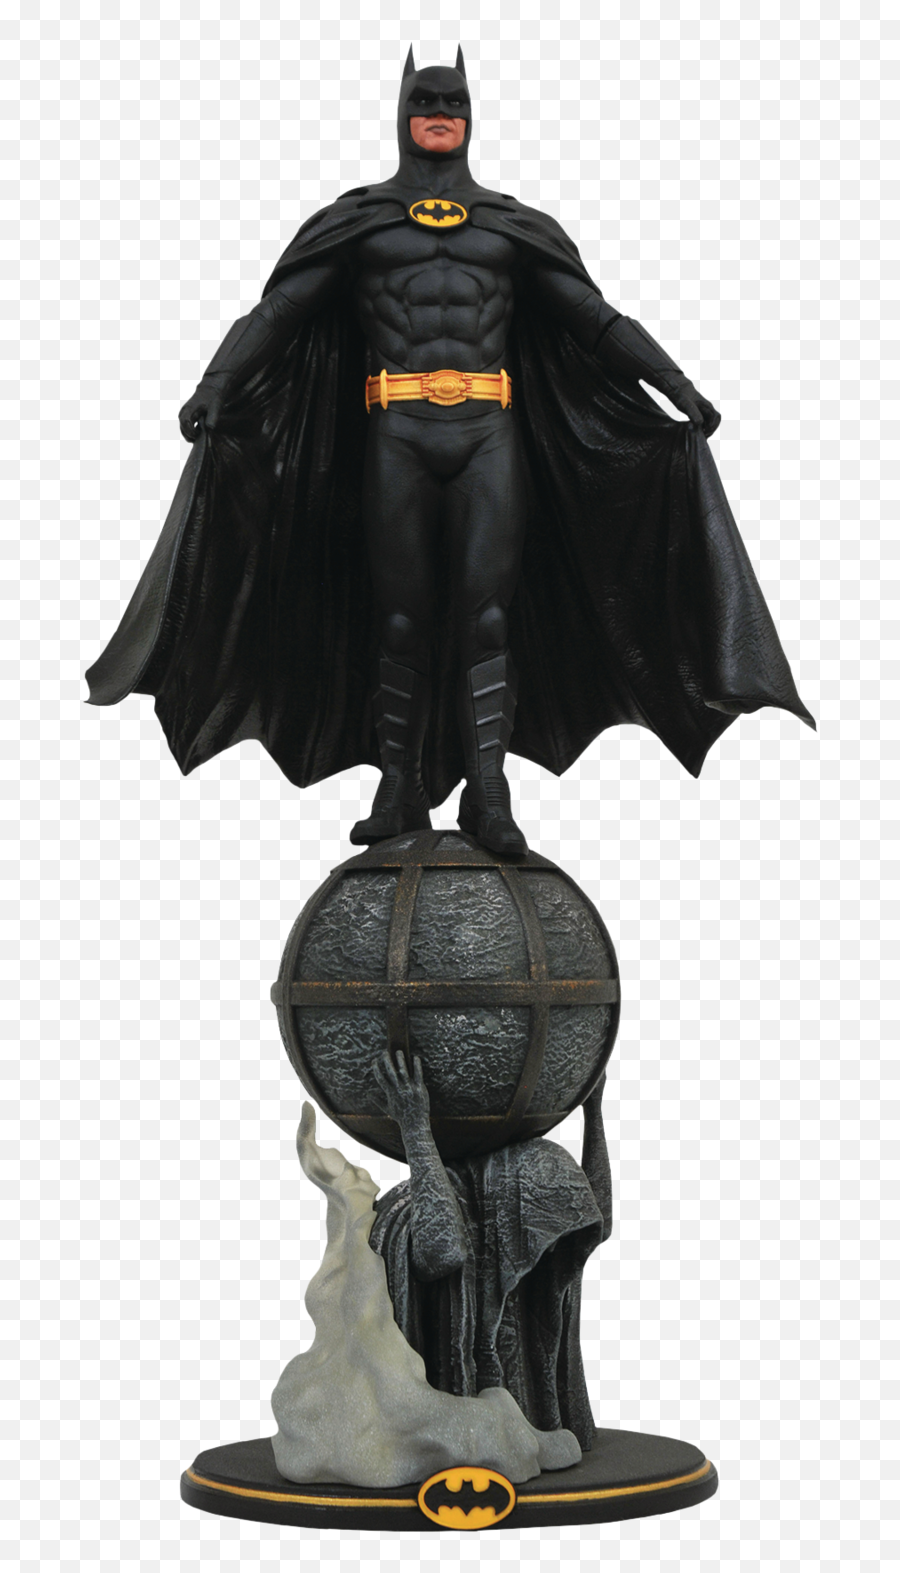 Batman 1989 - Batman Gallery Pvc Statue Batman Diamond Select Statue Emoji,Godzilla Emoji